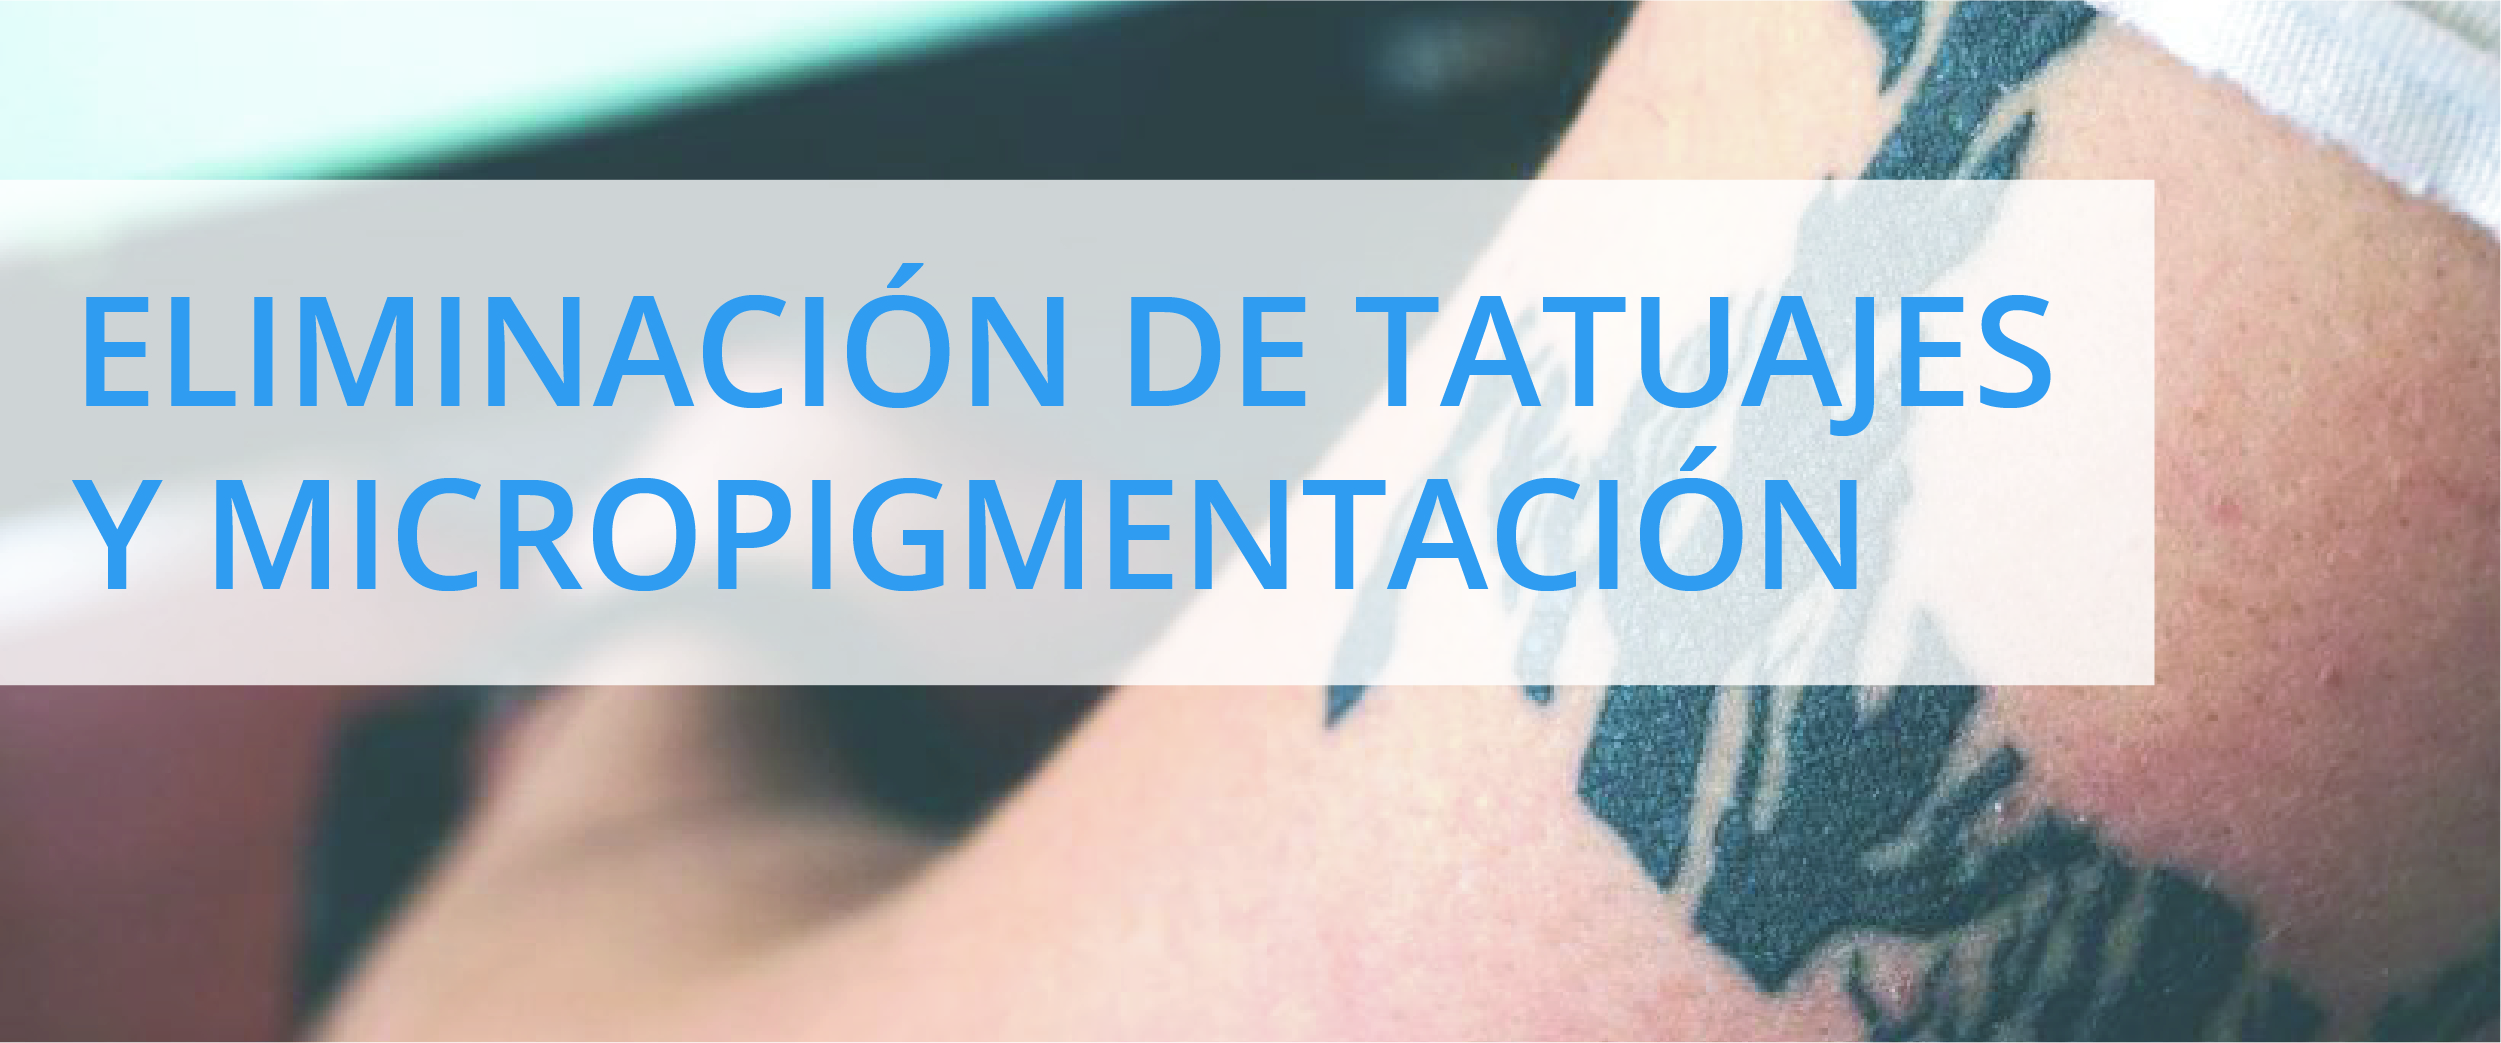 Eliminación de tatuajes y micropigmentación